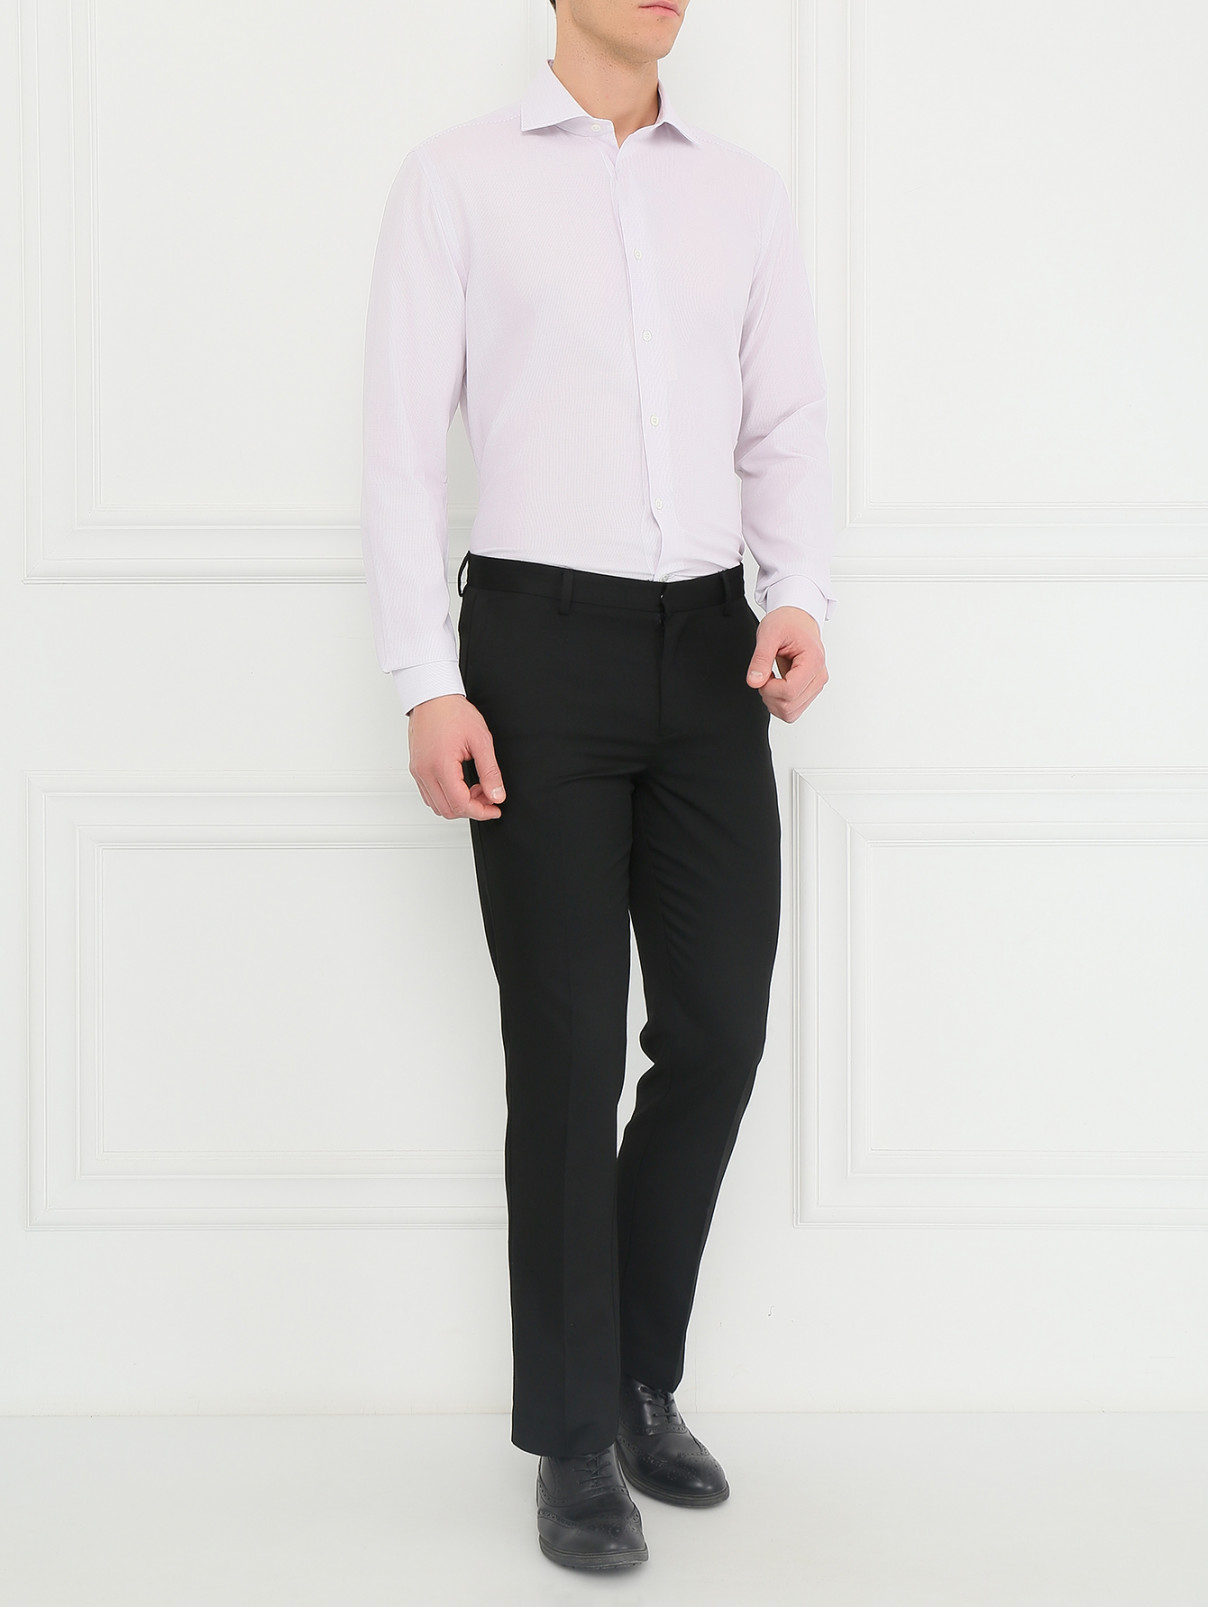 Рубашка из хлопка Corneliani  –  Модель Общий вид  – Цвет:  Розовый